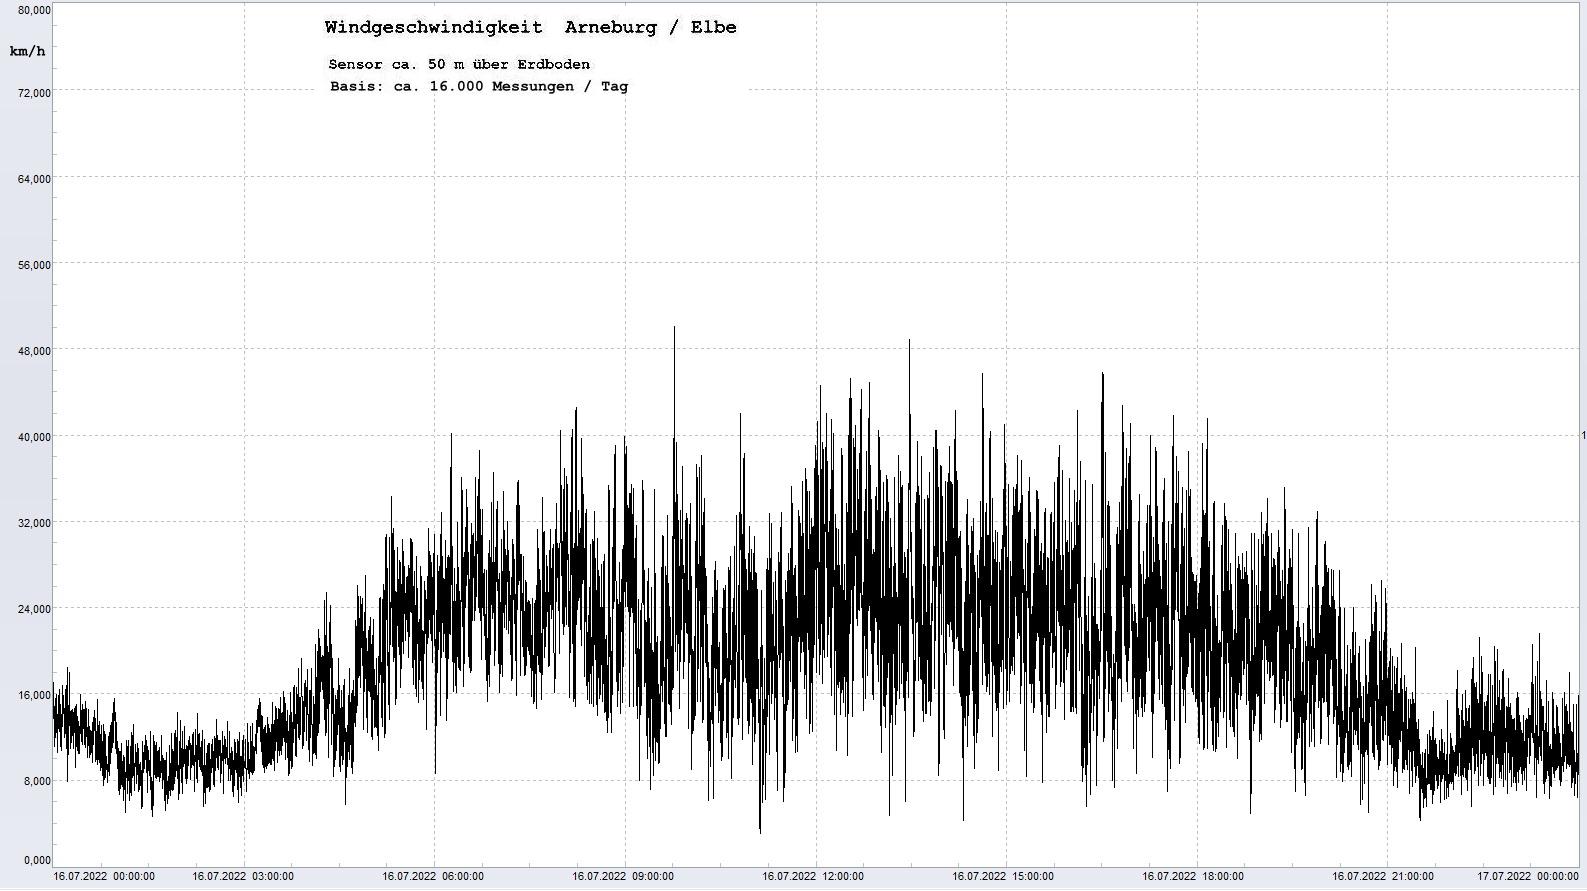 Arneburg Tages-Diagramm Winddaten, 16.07.2022
  Diaramm, Sensor auf Gebude, ca. 50 m ber Erdboden, Basis: 5s-Aufzeichnung